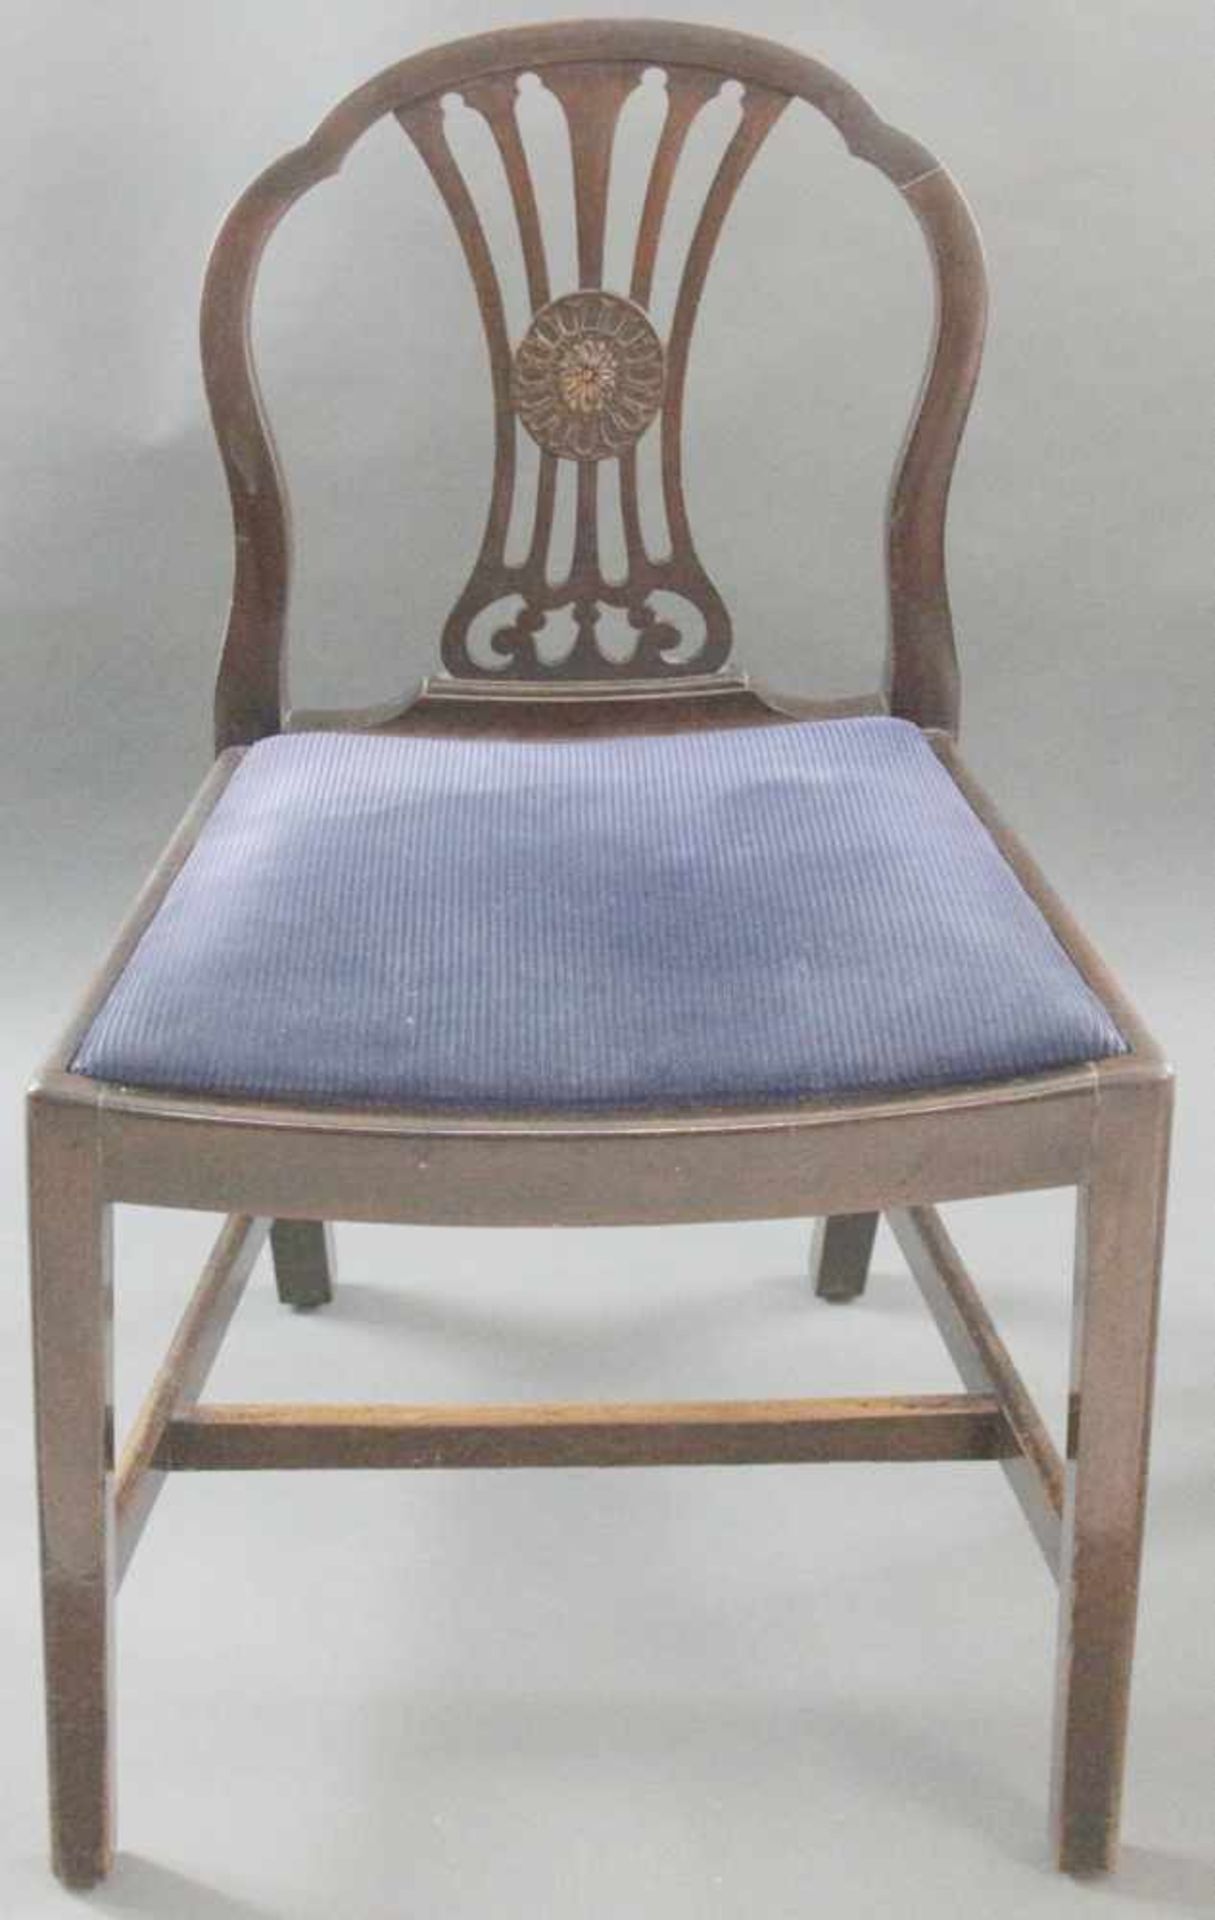 6 Regency - Stühle, Mahagoni, England, um 1820, gesproste Rückenlehne, mittig mit großer Rosette, - Bild 3 aus 3